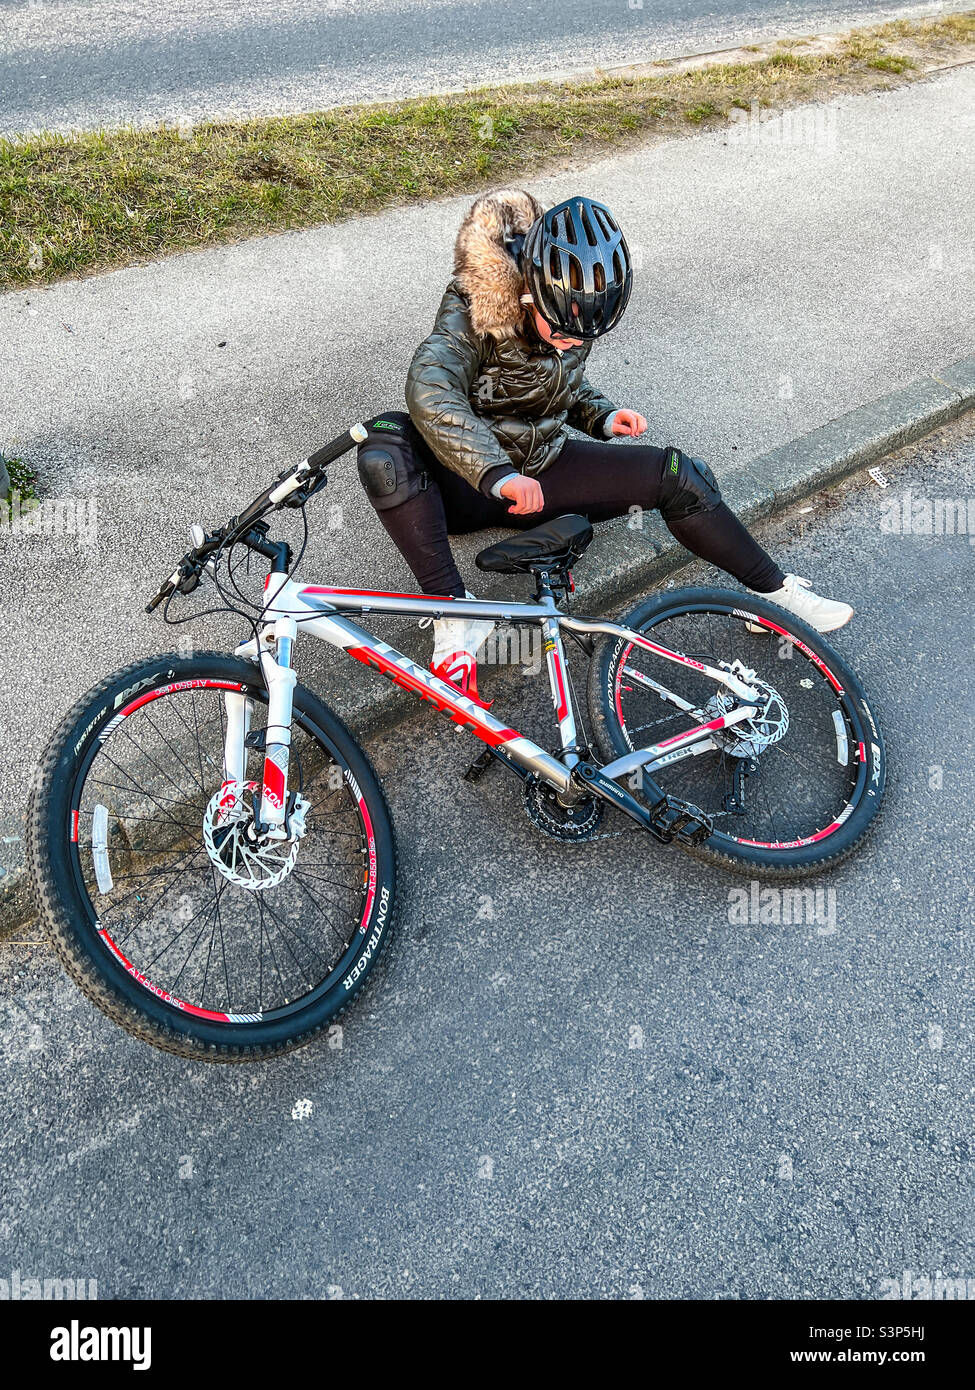 Bike fallen immagini e fotografie stock ad alta risoluzione - Alamy